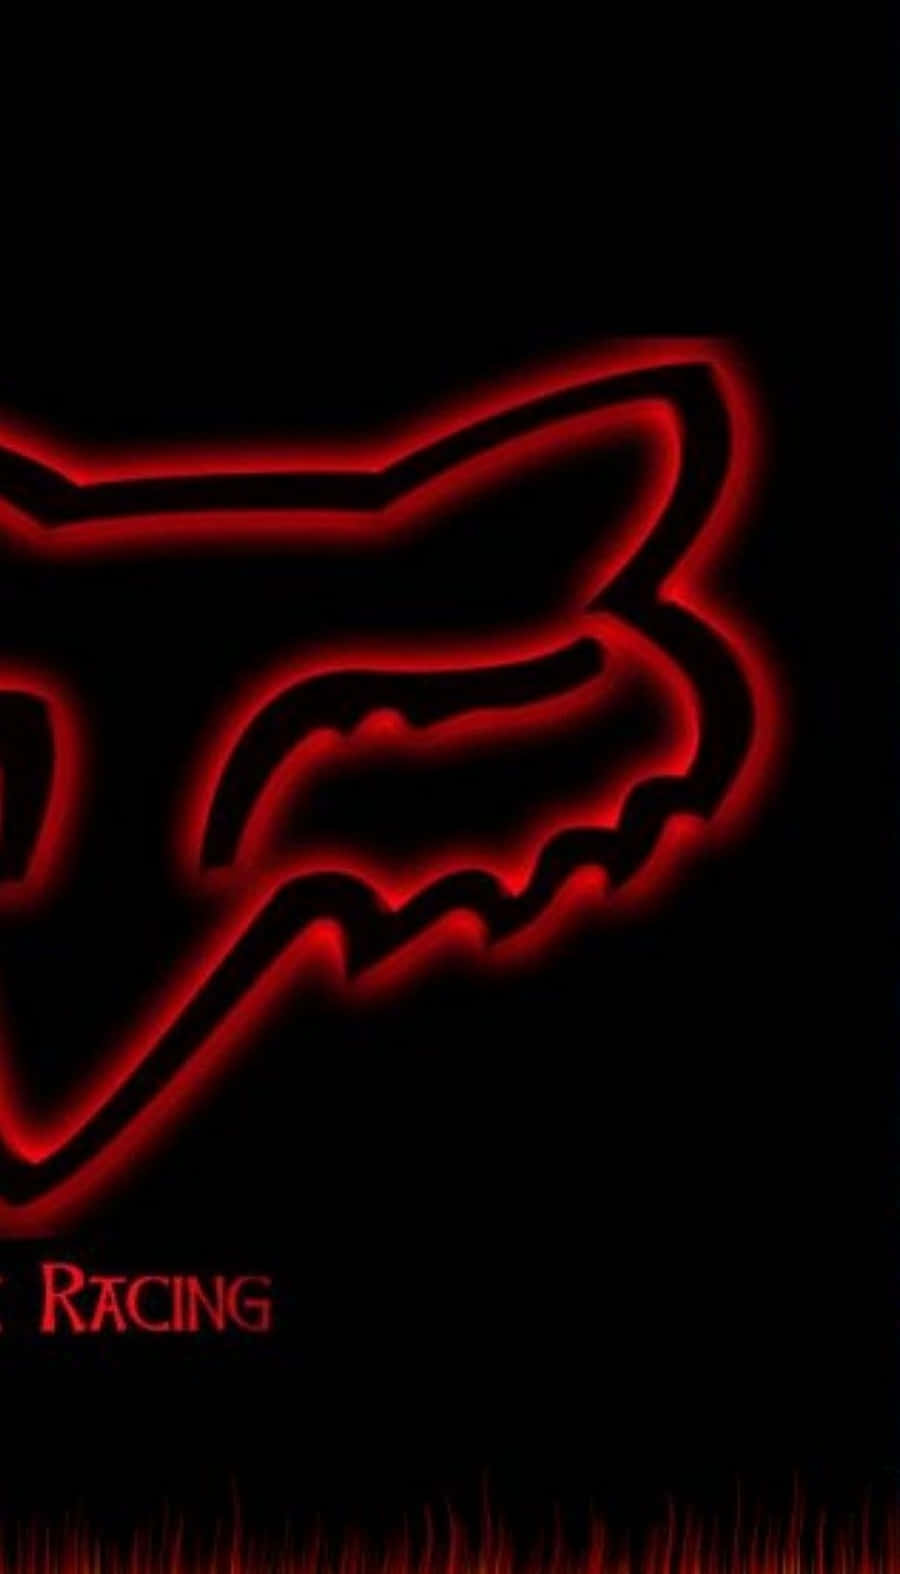 Logode Fox Racing En Rojo Sobre Fondo Negro Fondo de pantalla